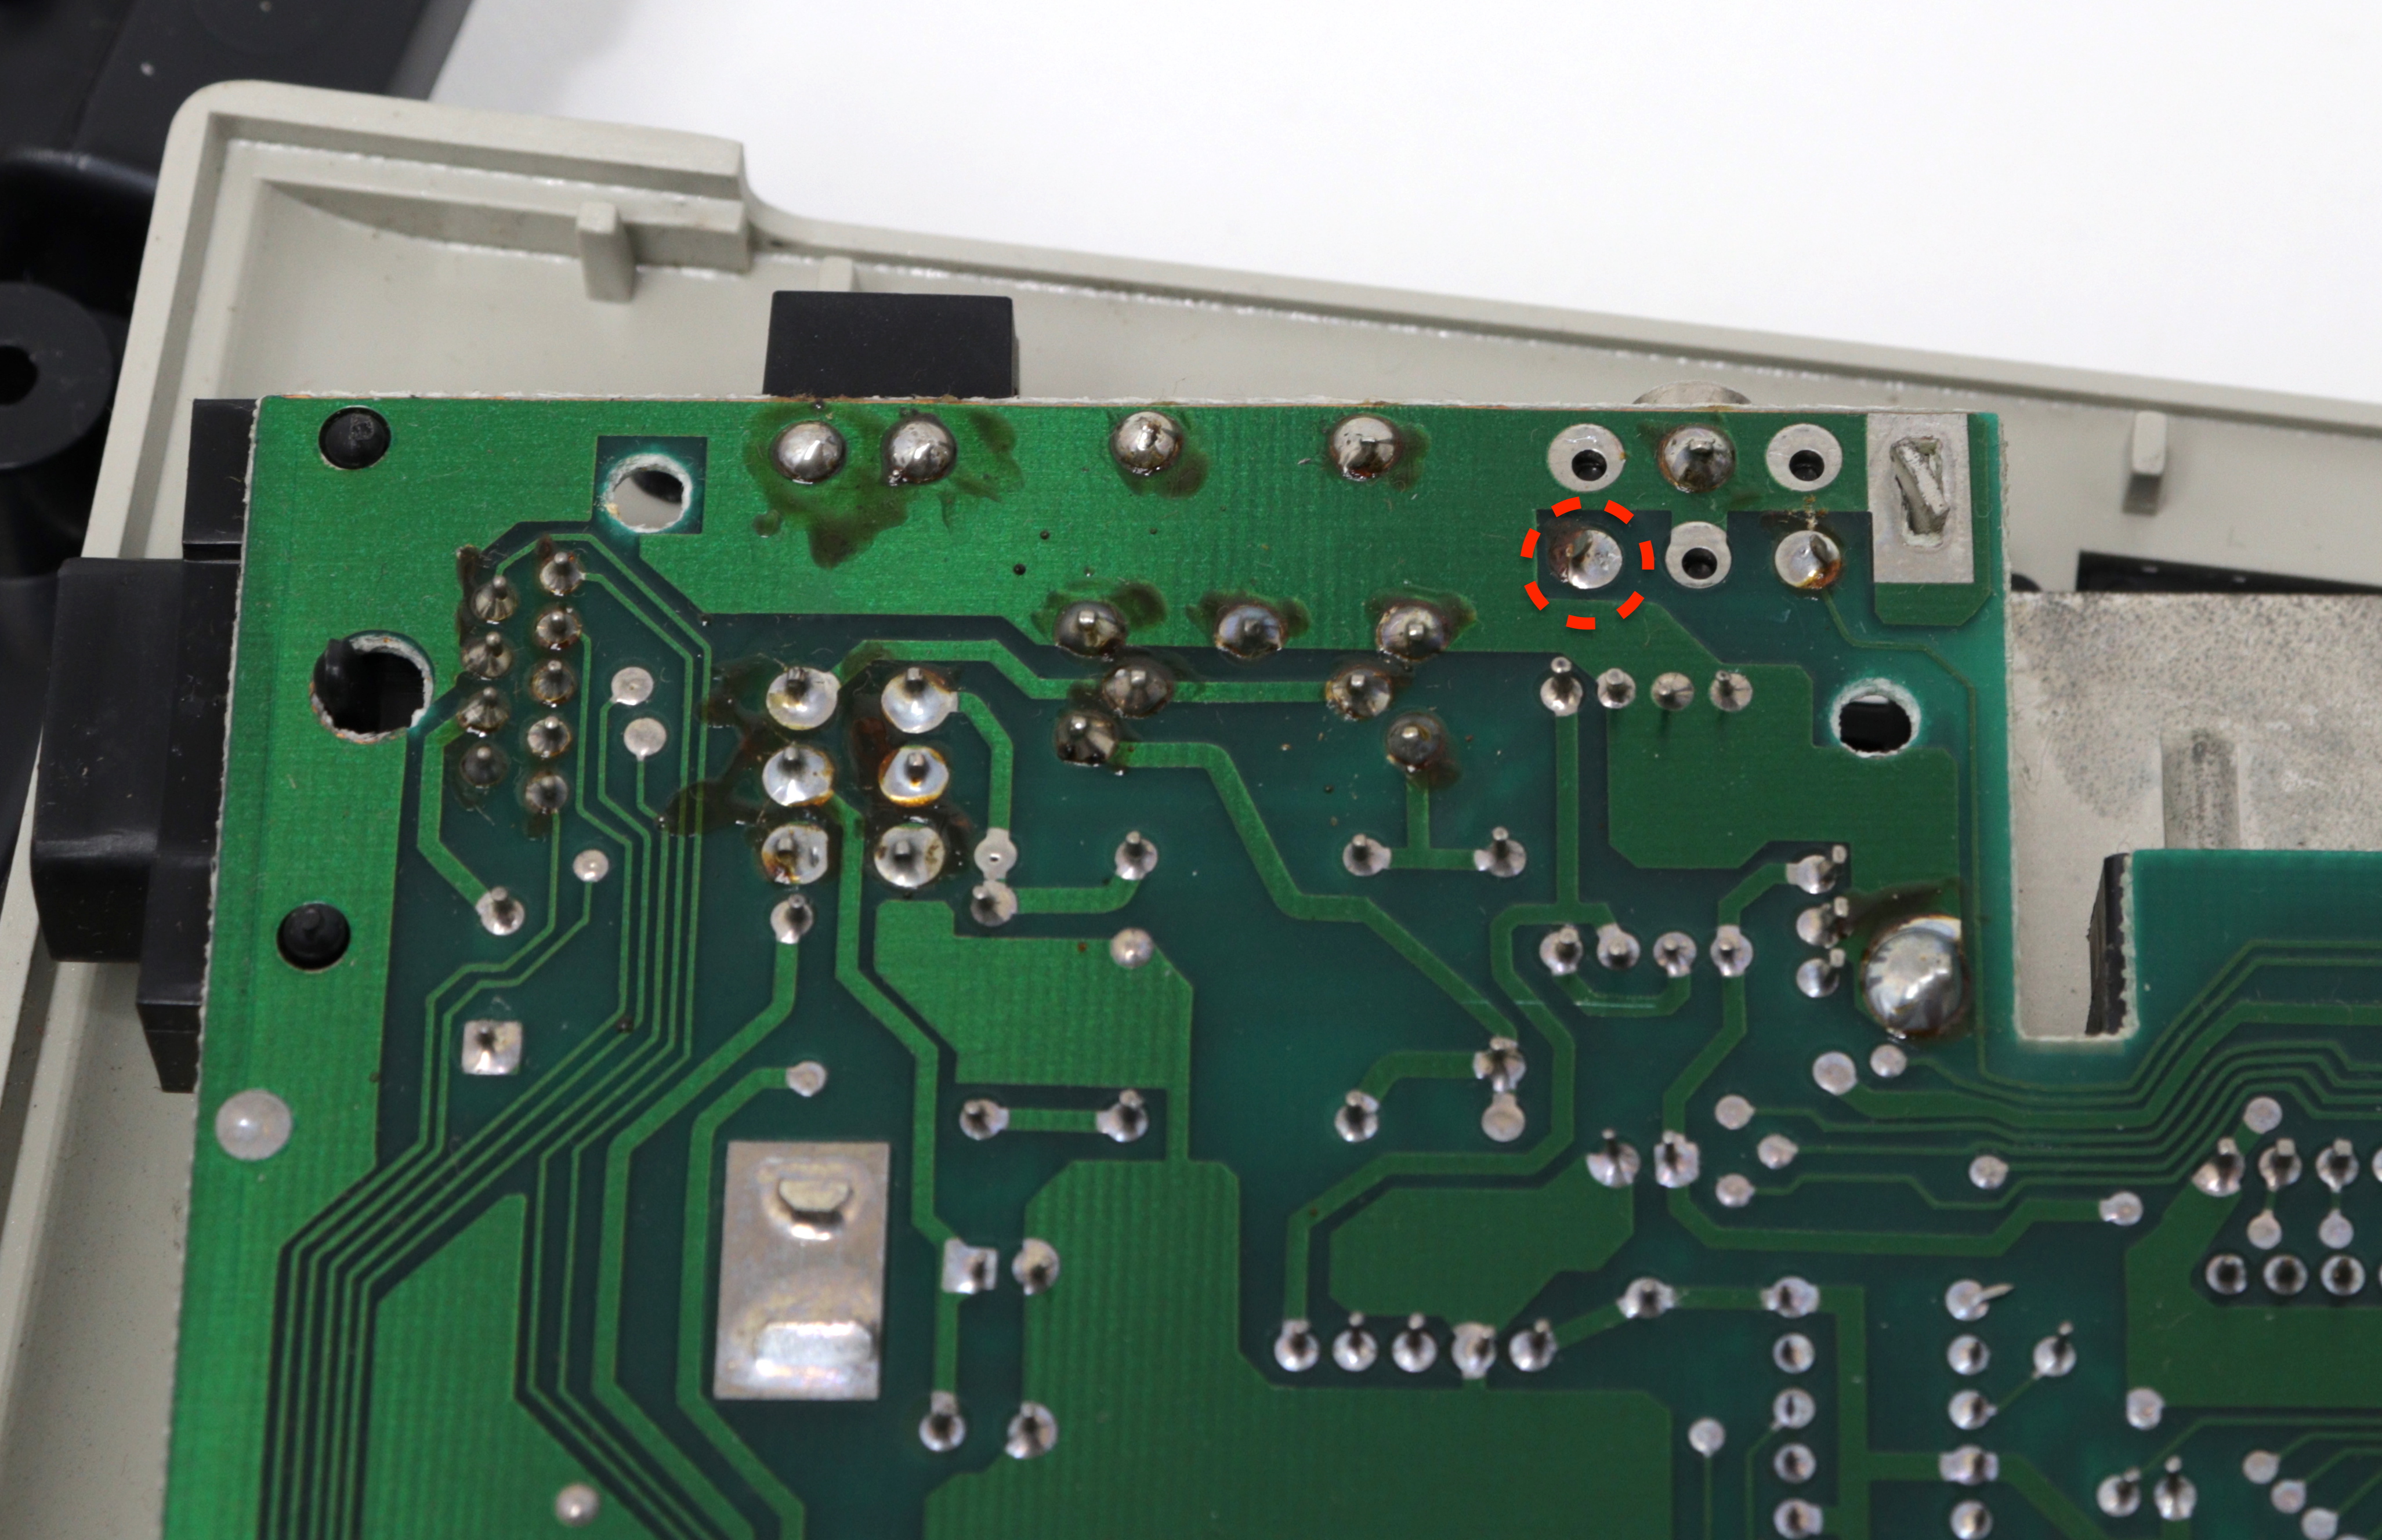 Commodore MAX - hang csatlakozó nem használt pin